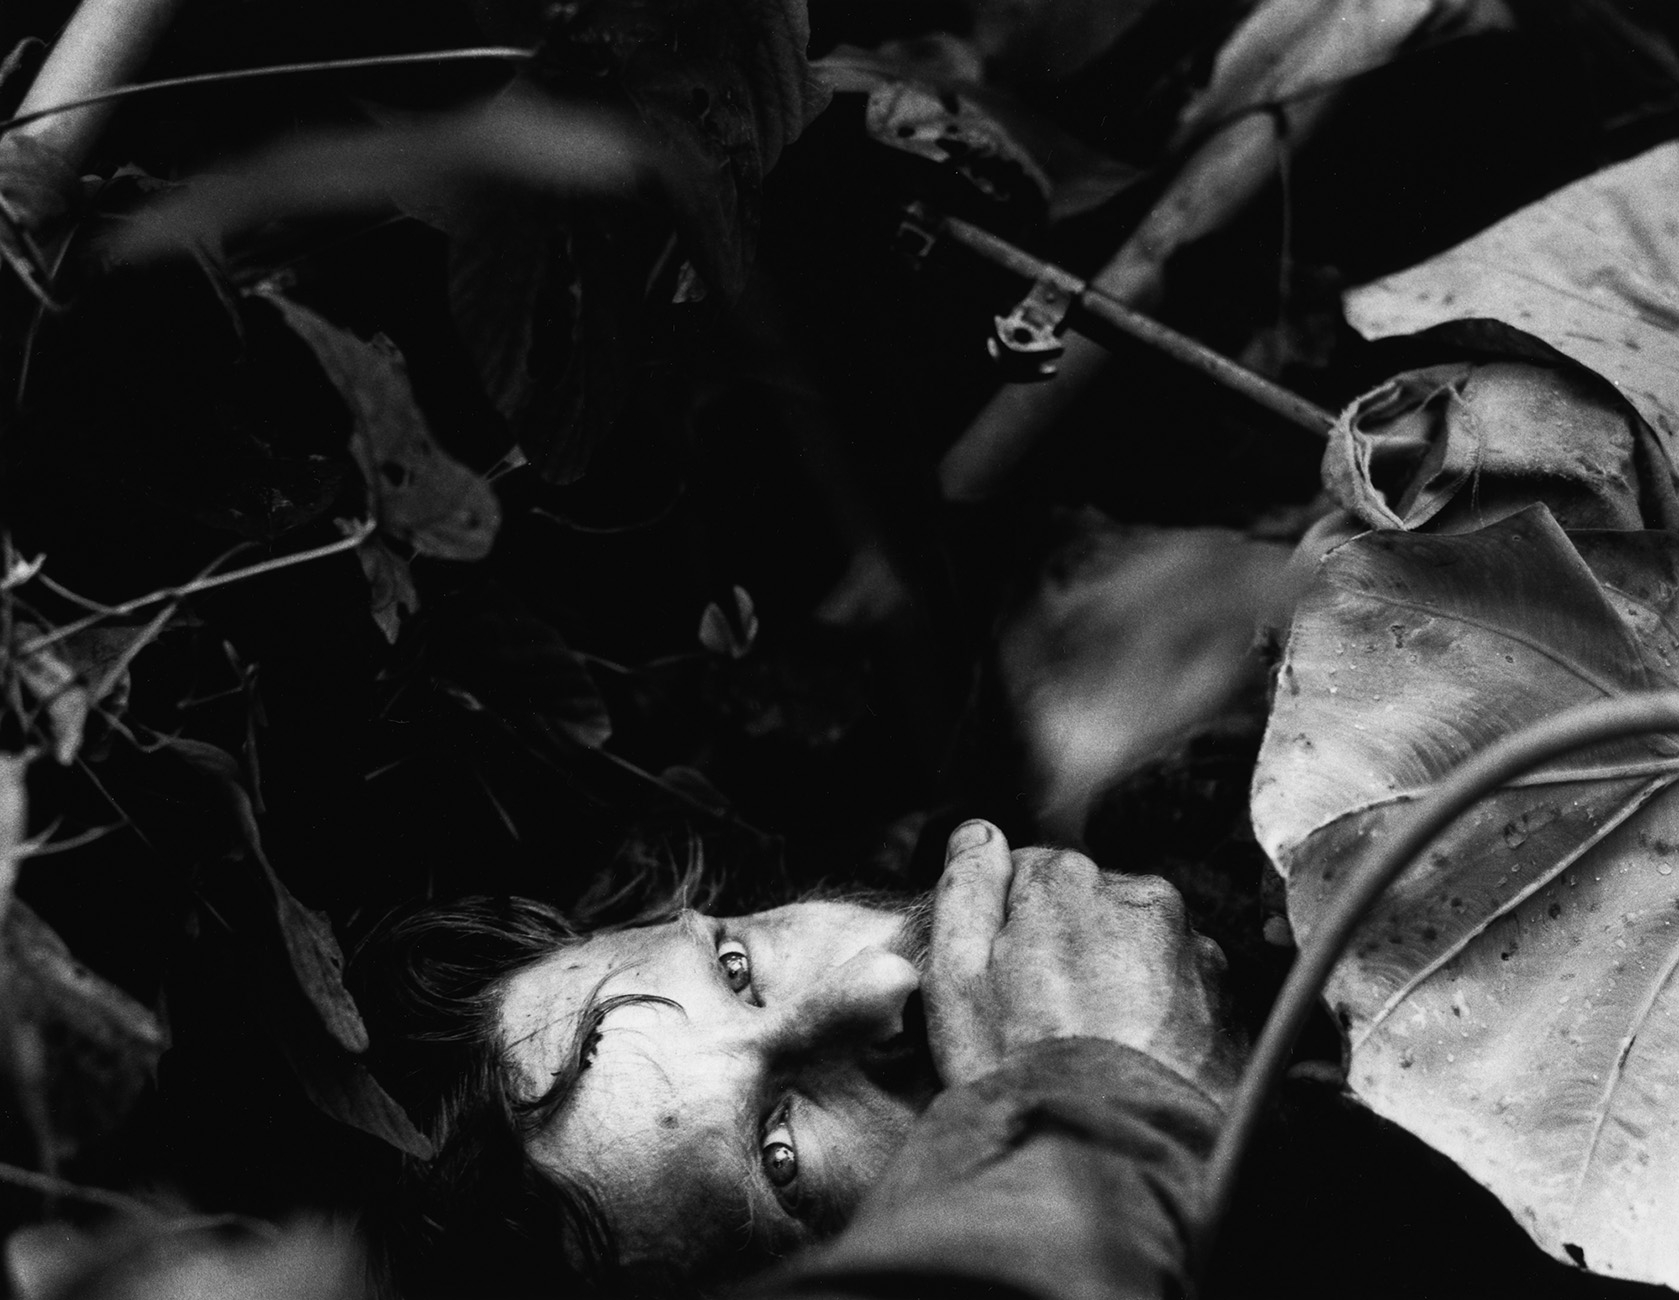 Schwarz-weiß-Foto: Zwischen Dschungelpflanzen das Gesicht eines Mannes. Ihm wird der Mund mit einer Hand zugehalten.